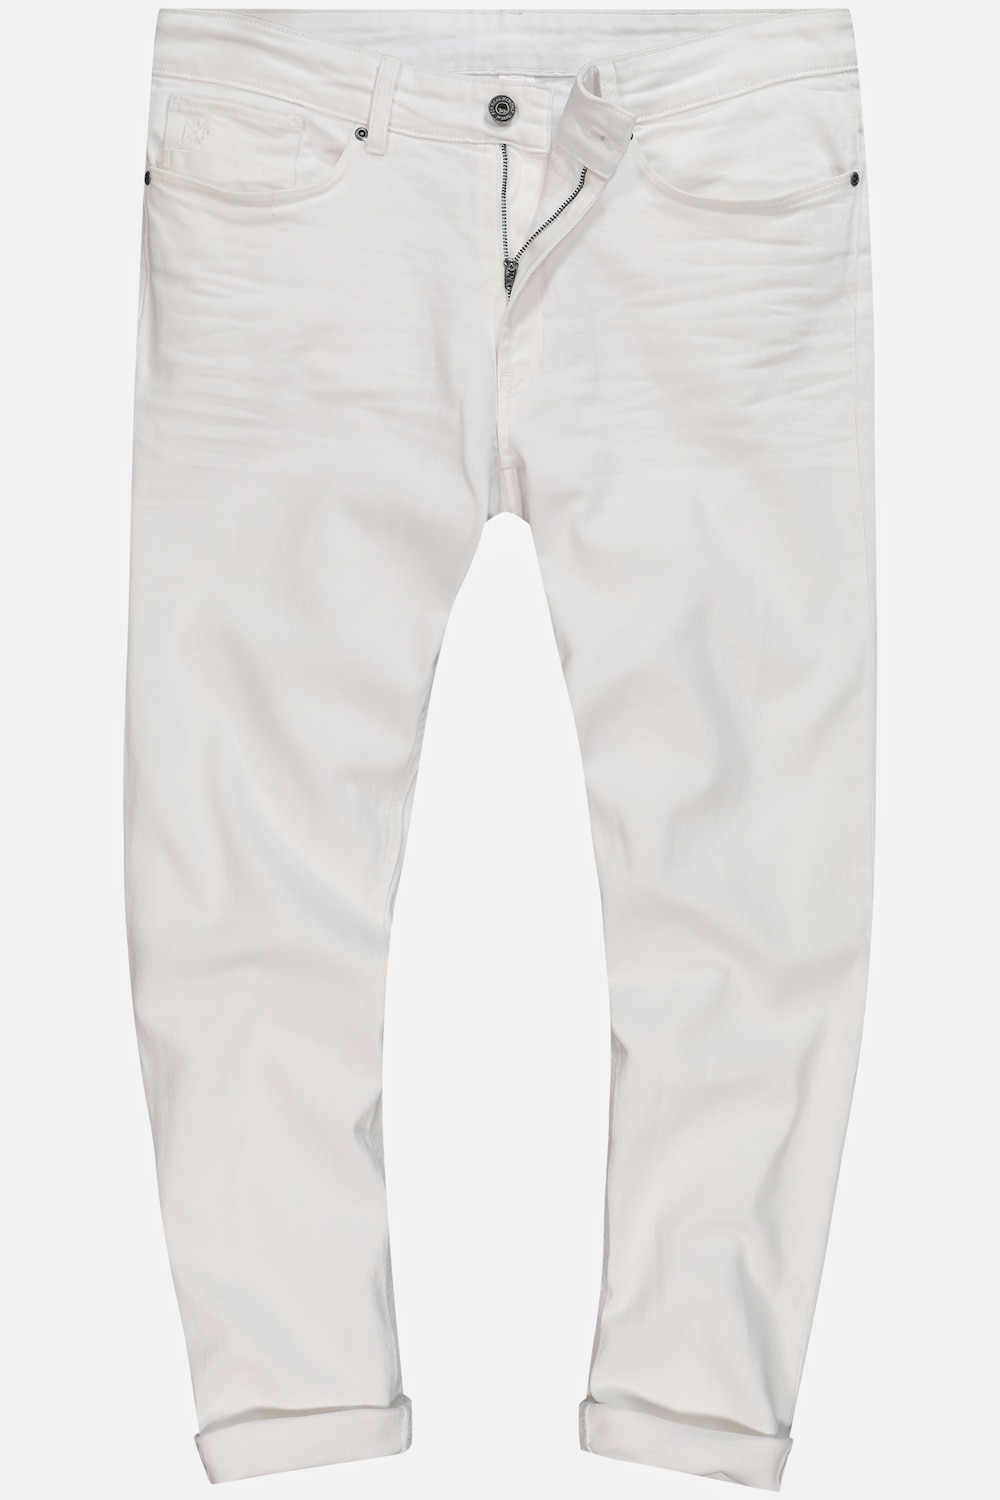 Grote Maten Jeans, Heren, wit, Maat: 70, Katoen, JP1880